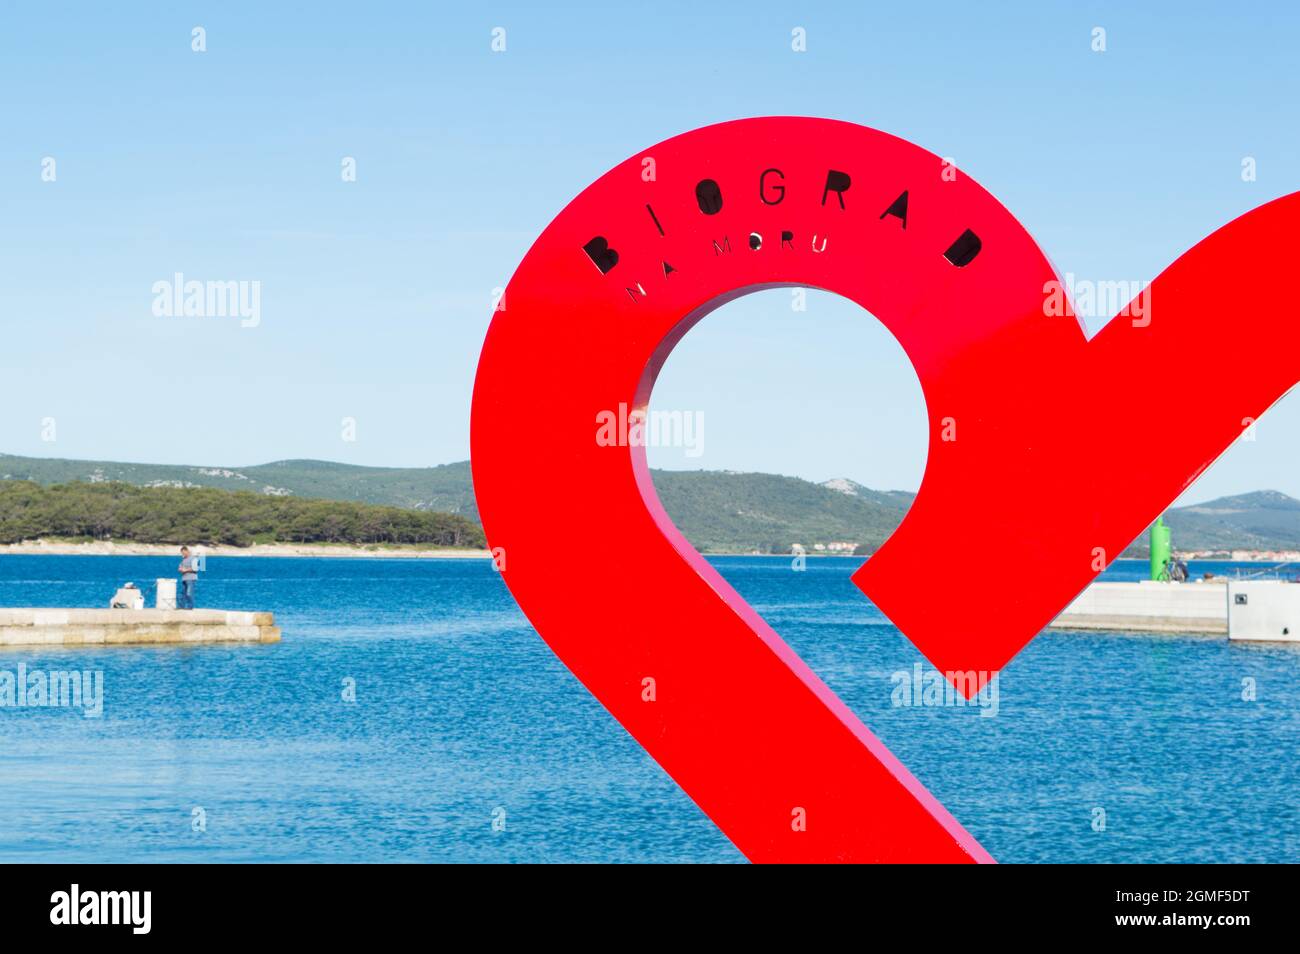 Biograd, Croatie - 29 mai 2021 : un signe Biograd sur le cœur rouge, qui donne sur la mer Adriatique bleue et l'île opposée de Pasman. Biograd est une ville de famille Banque D'Images